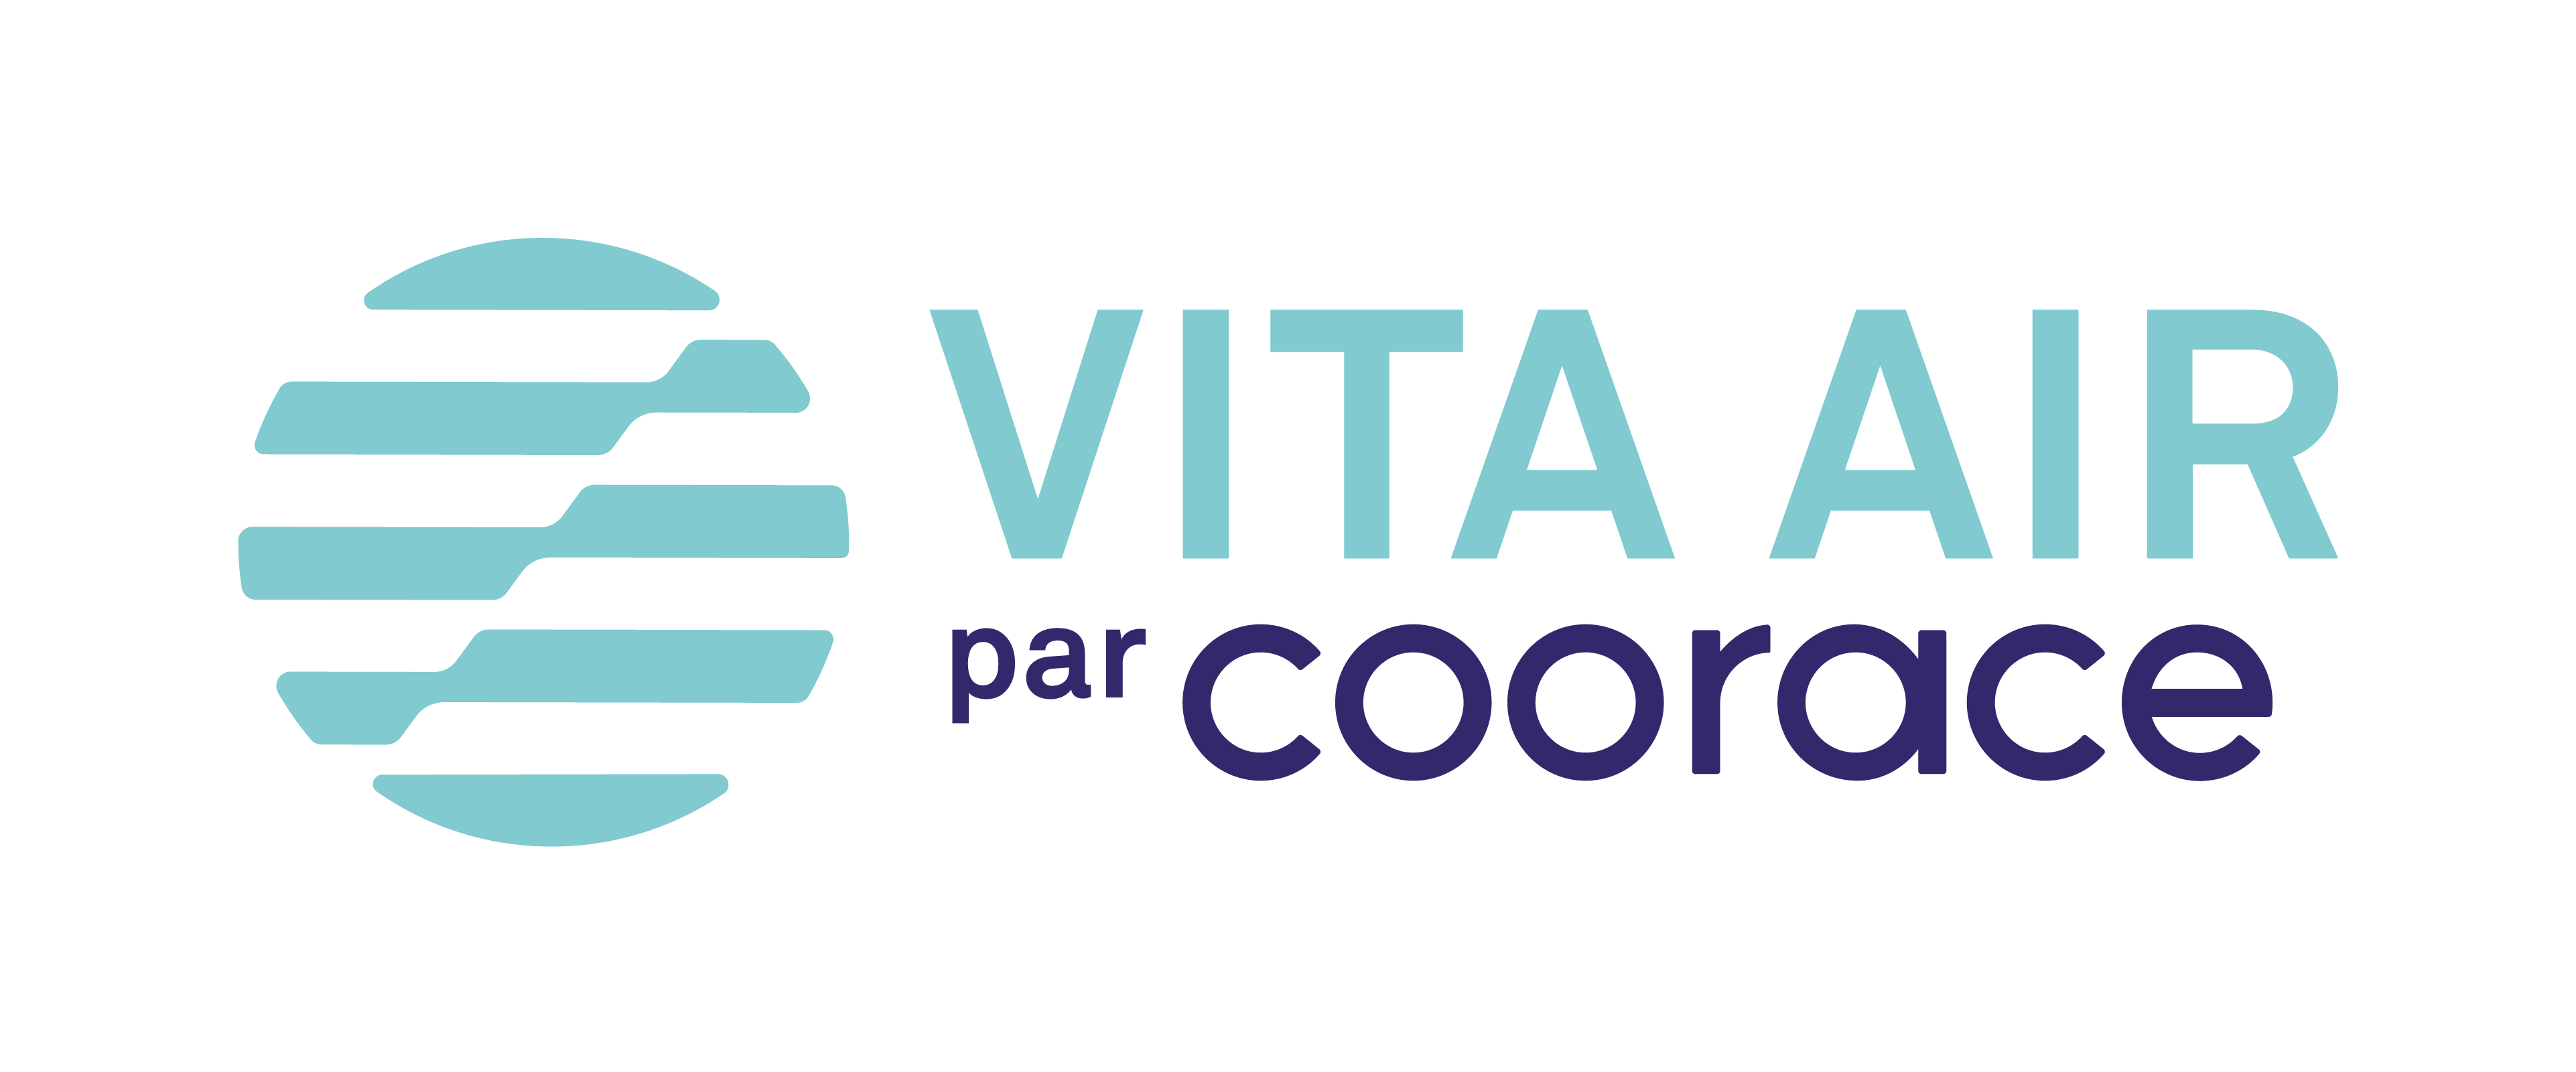 Coorace-Logo-couleur-VitaAir